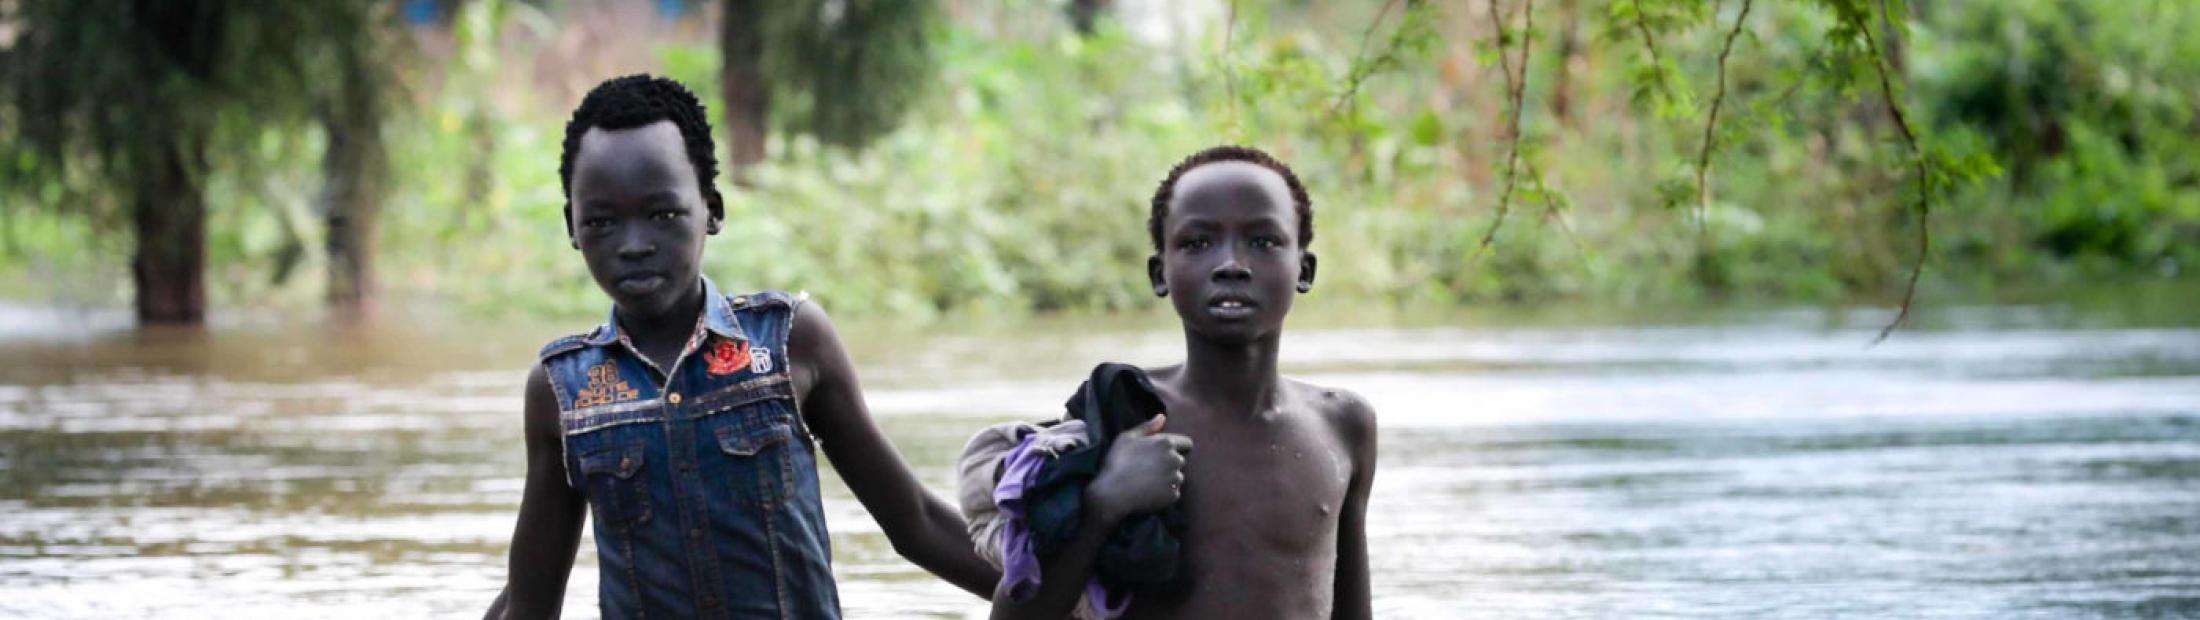 La emergencia climática multiplica los riesgos para las personas desplazadas